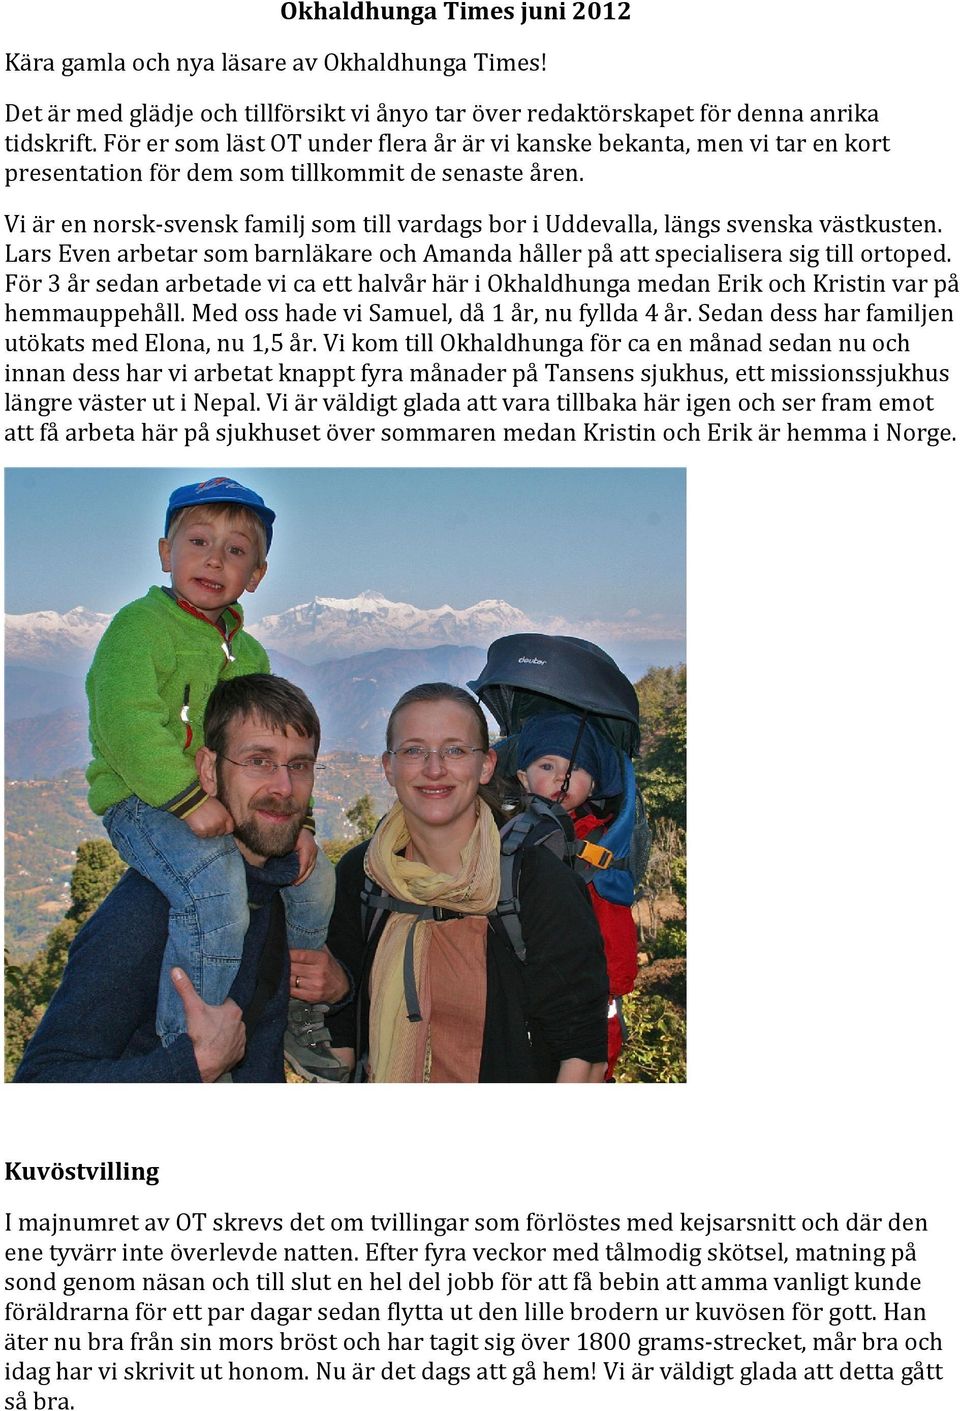 Vi är en norsk-svensk familj som till vardags bor i Uddevalla, längs svenska västkusten. Lars Even arbetar som barnläkare och Amanda håller på att specialisera sig till ortoped.